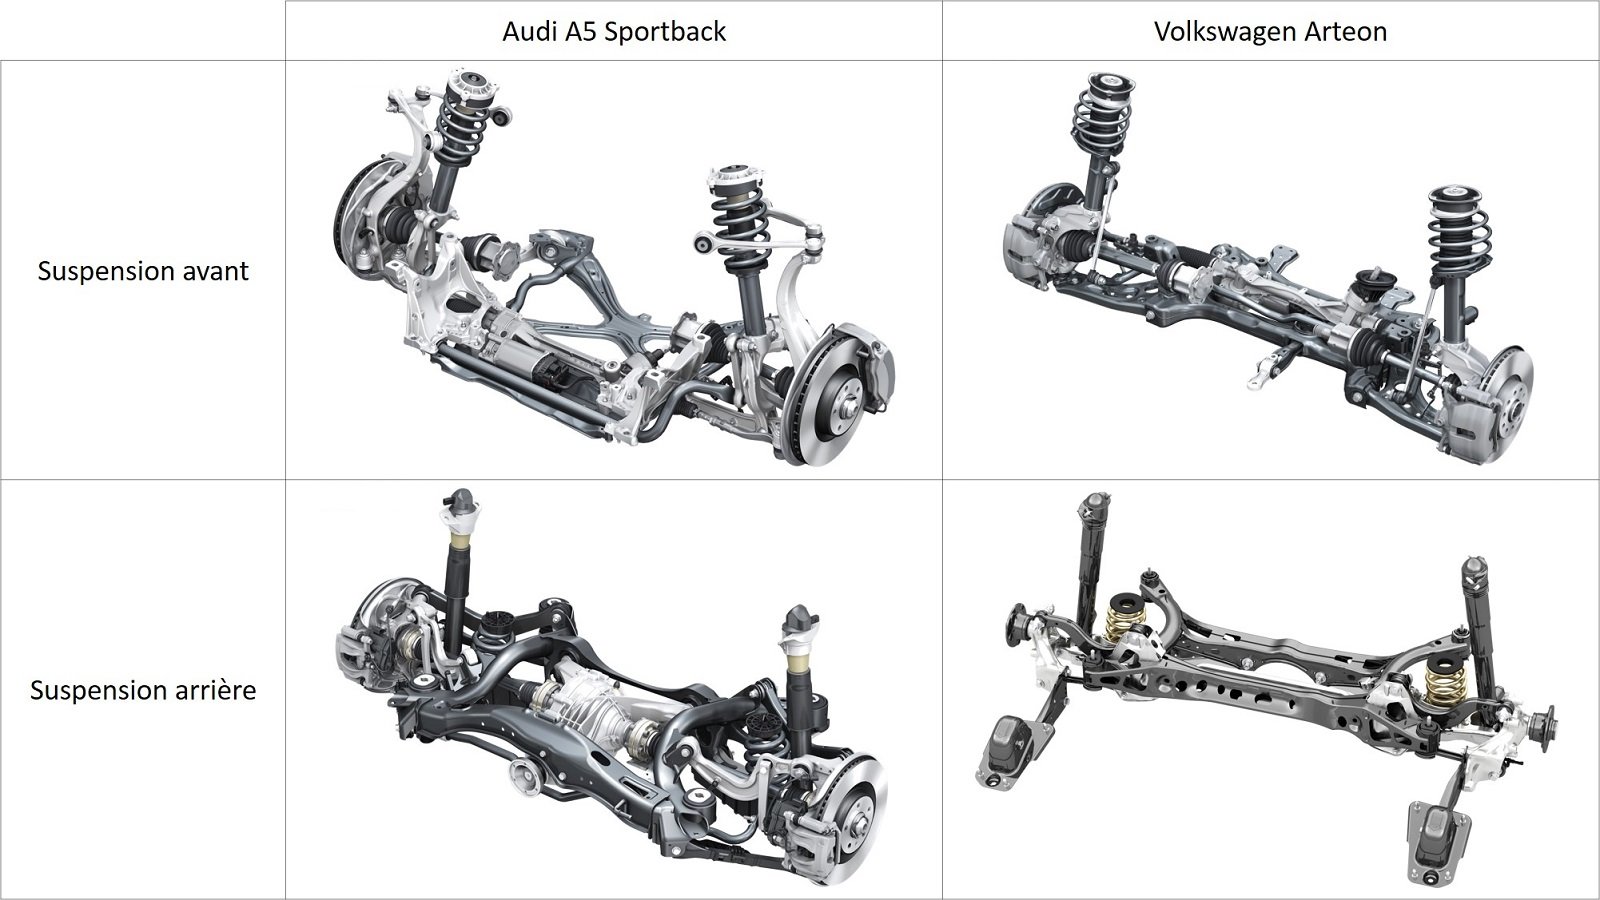 Audi A5 Sportback - Volkswagen Arteon - Suspensions avant et arrière